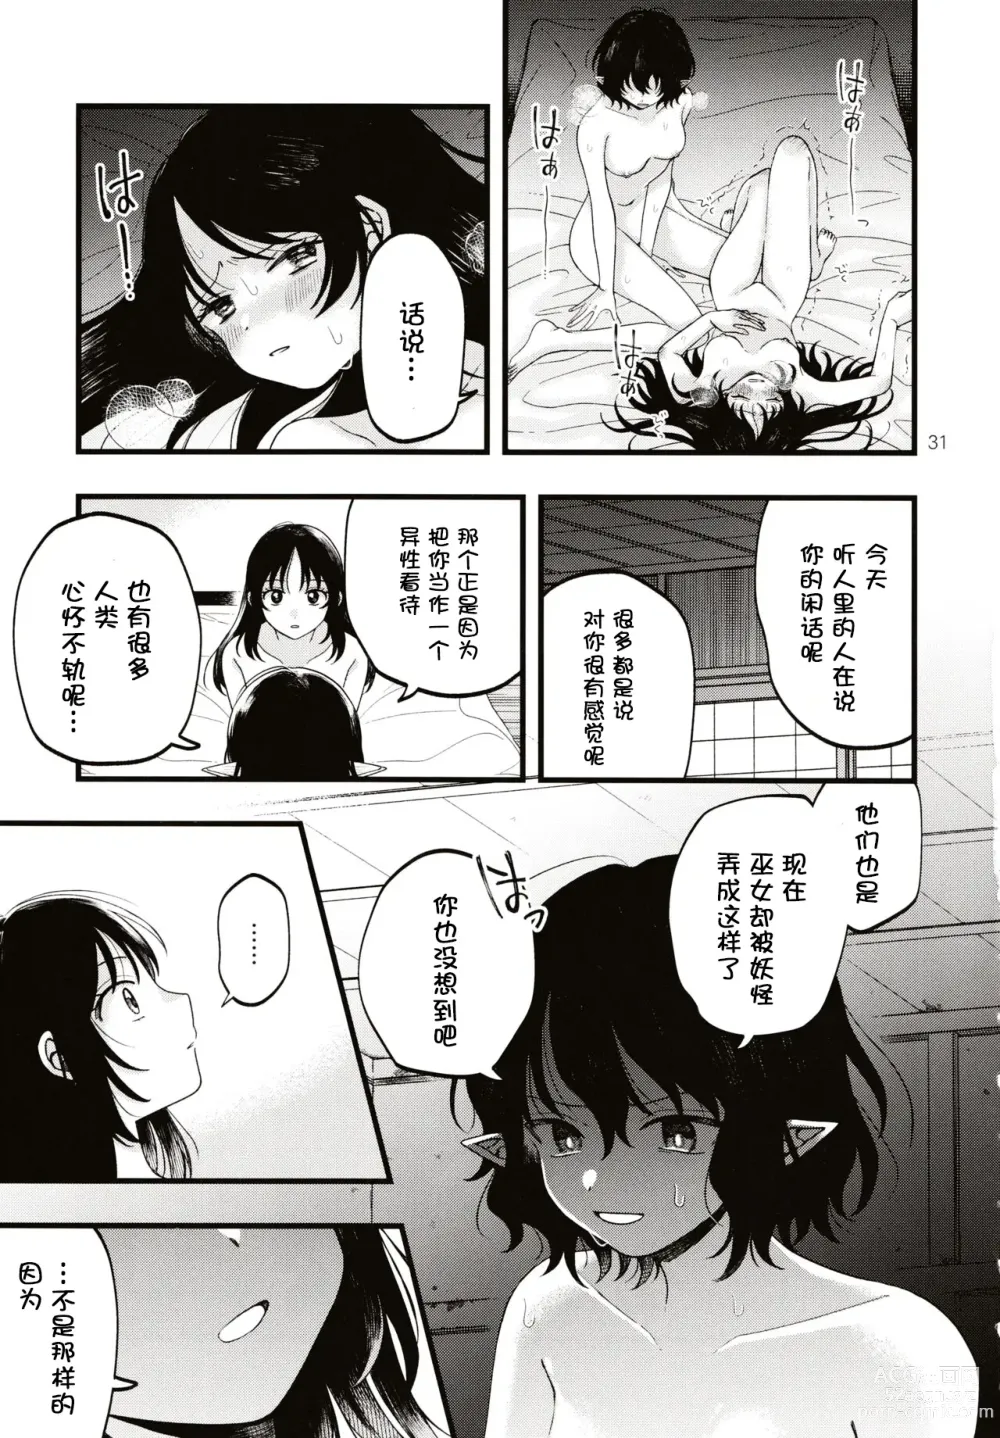 Page 30 of doujinshi Rubeus no Kankai